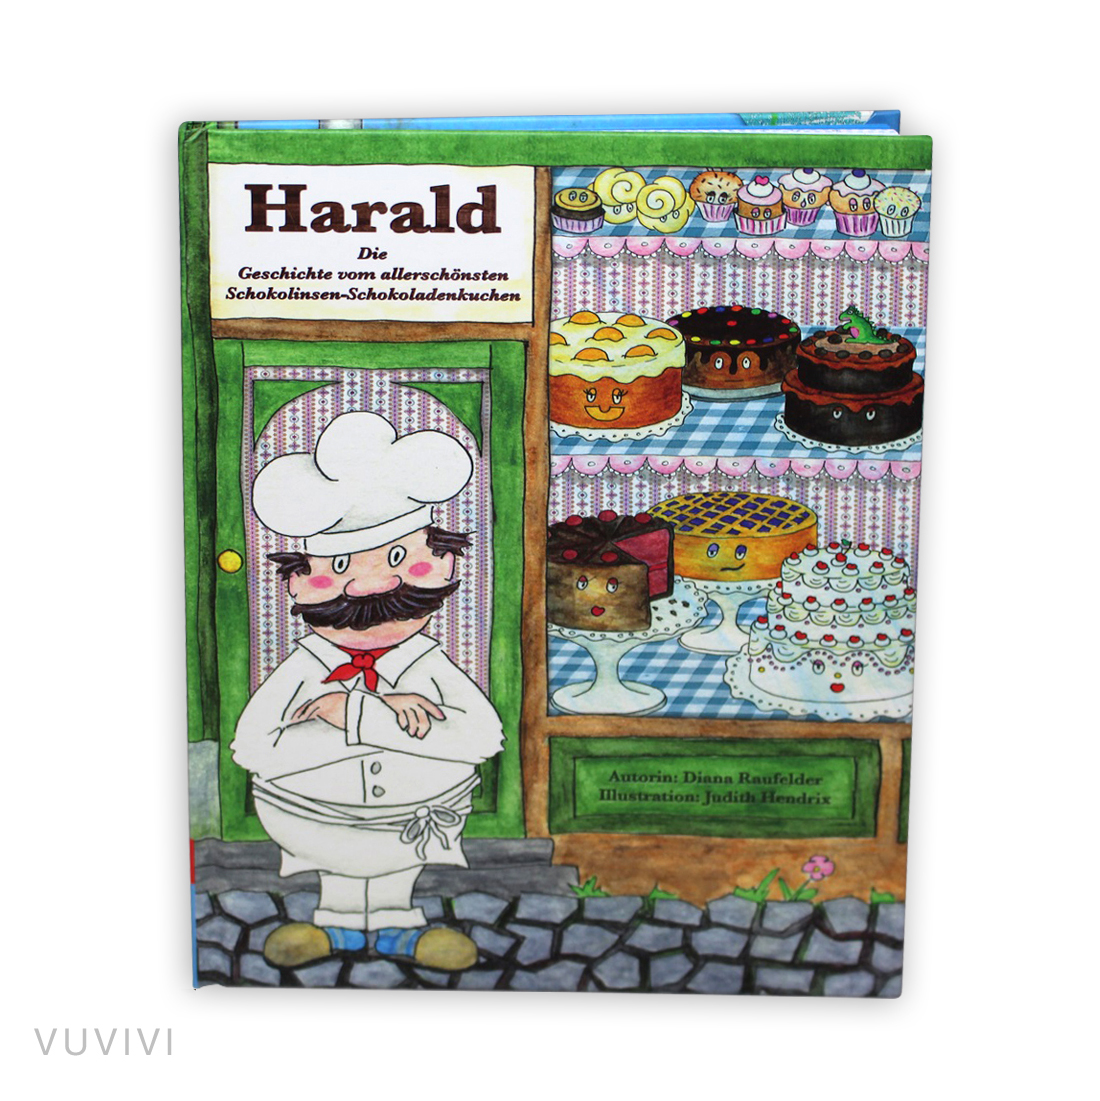 Harald.jpg